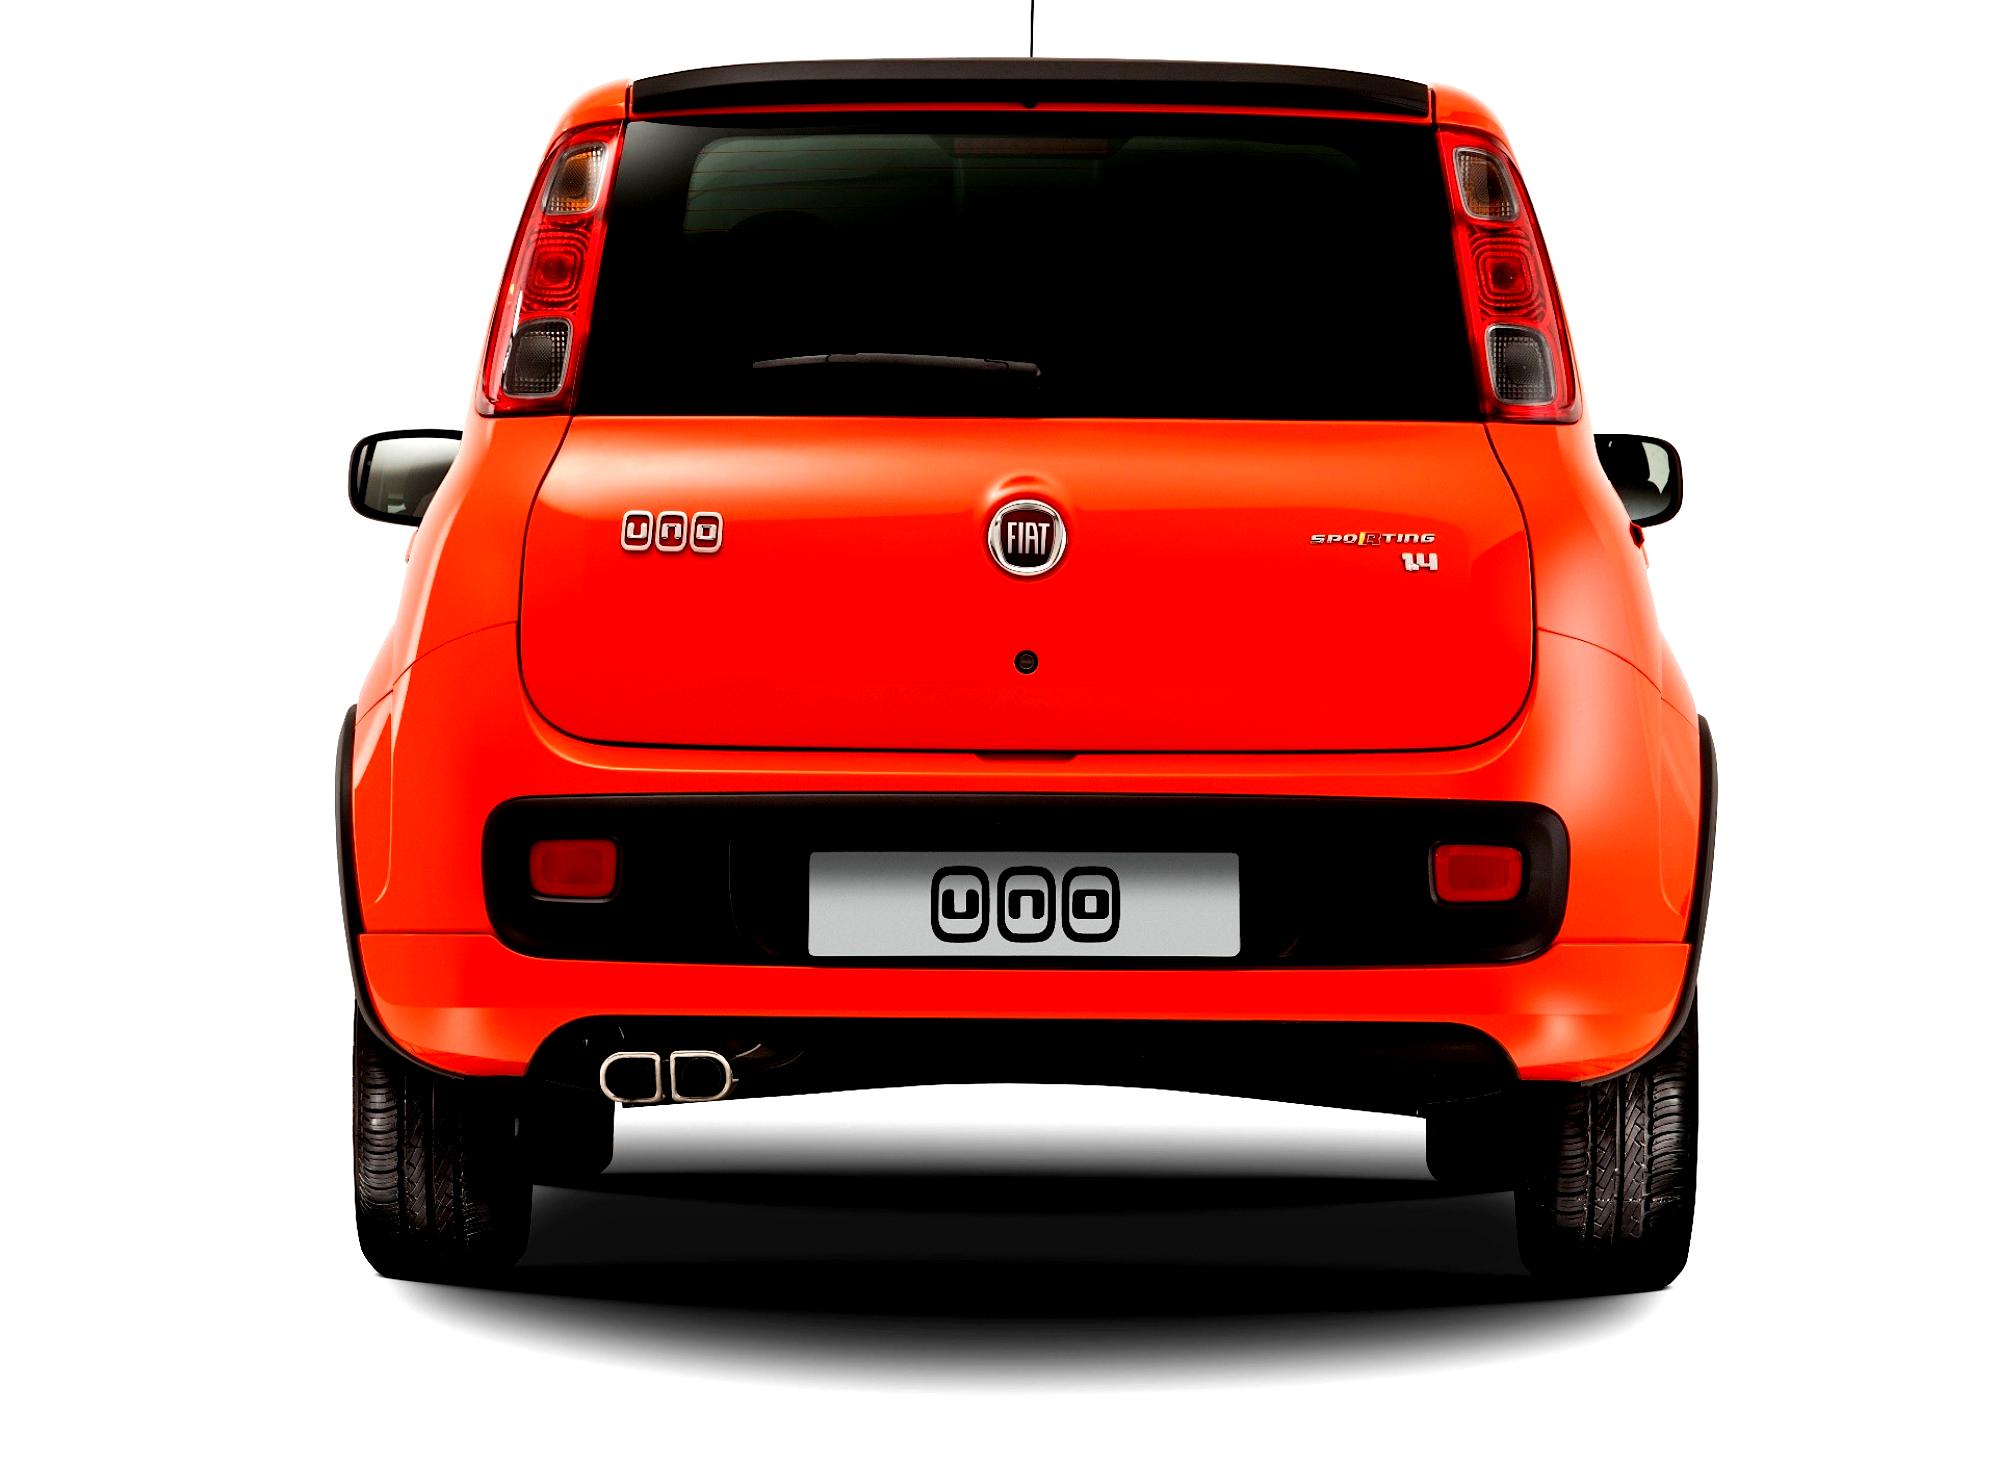 Fiat Uno 2010 #20